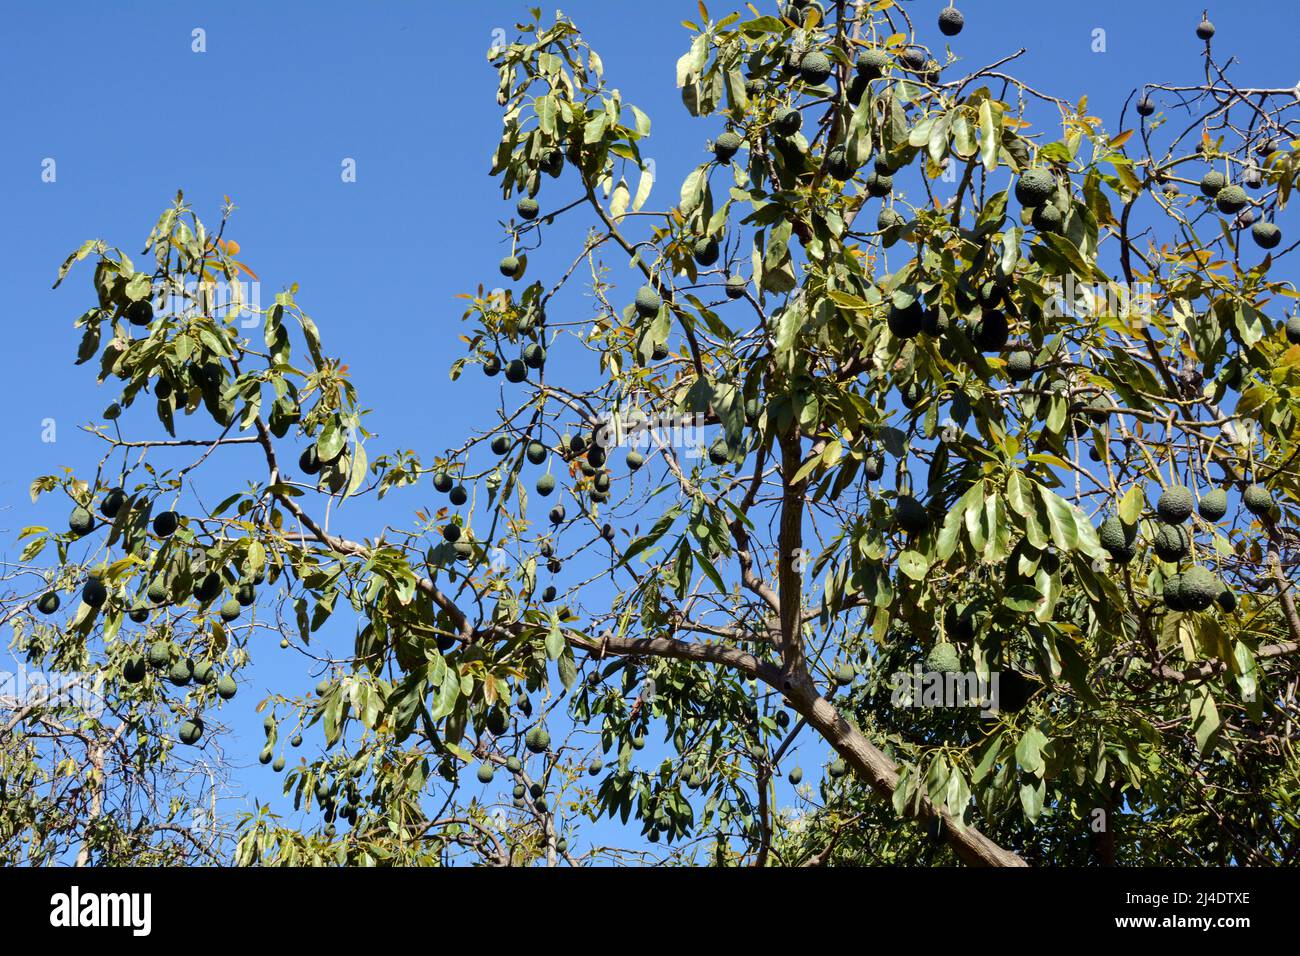 Aguacates españoles casi maduros colgados de las ramas de un árbol en una finca (finca) en Los Realejos, en la isla de Tenerife, Islas Canarias, España Foto de stock